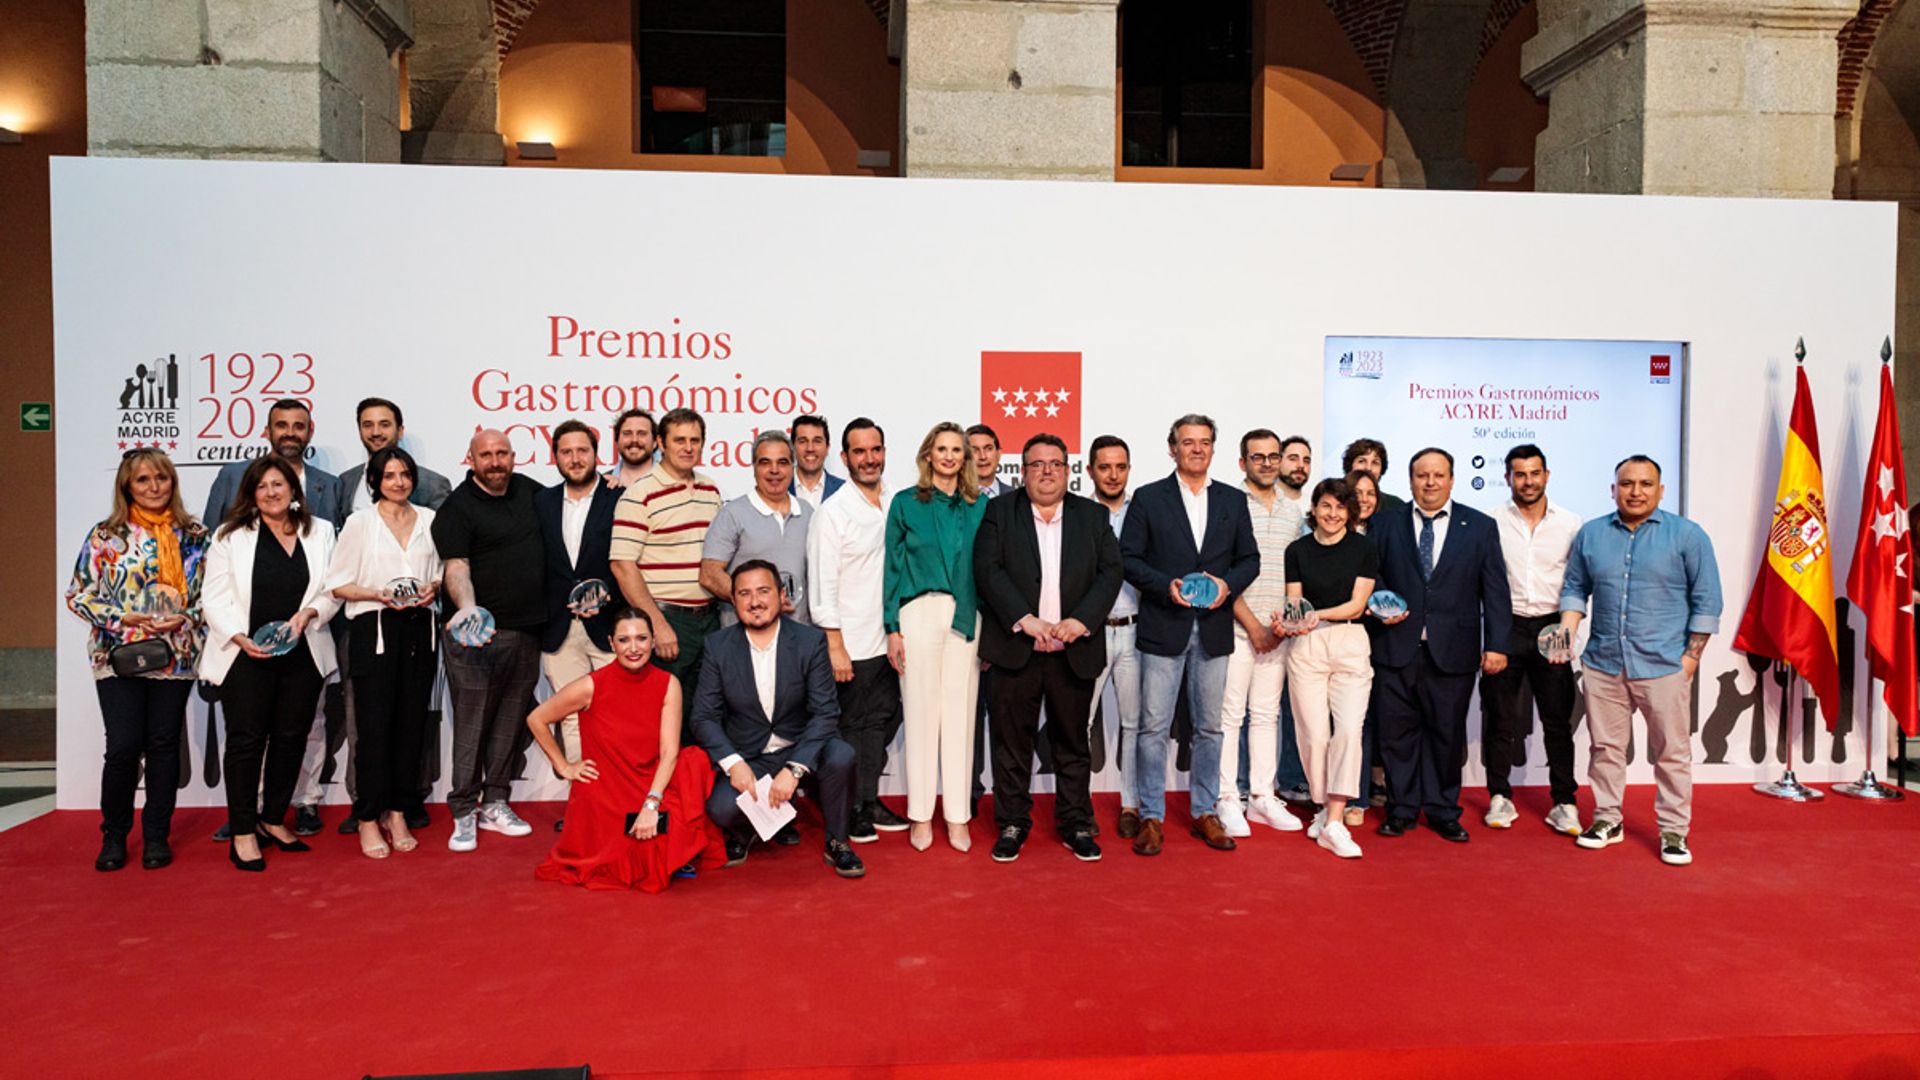 Mario Sandoval, Ugo Chan, Tripea y María José Huertas, Premios Gastronómicos de ACYRE Madrid